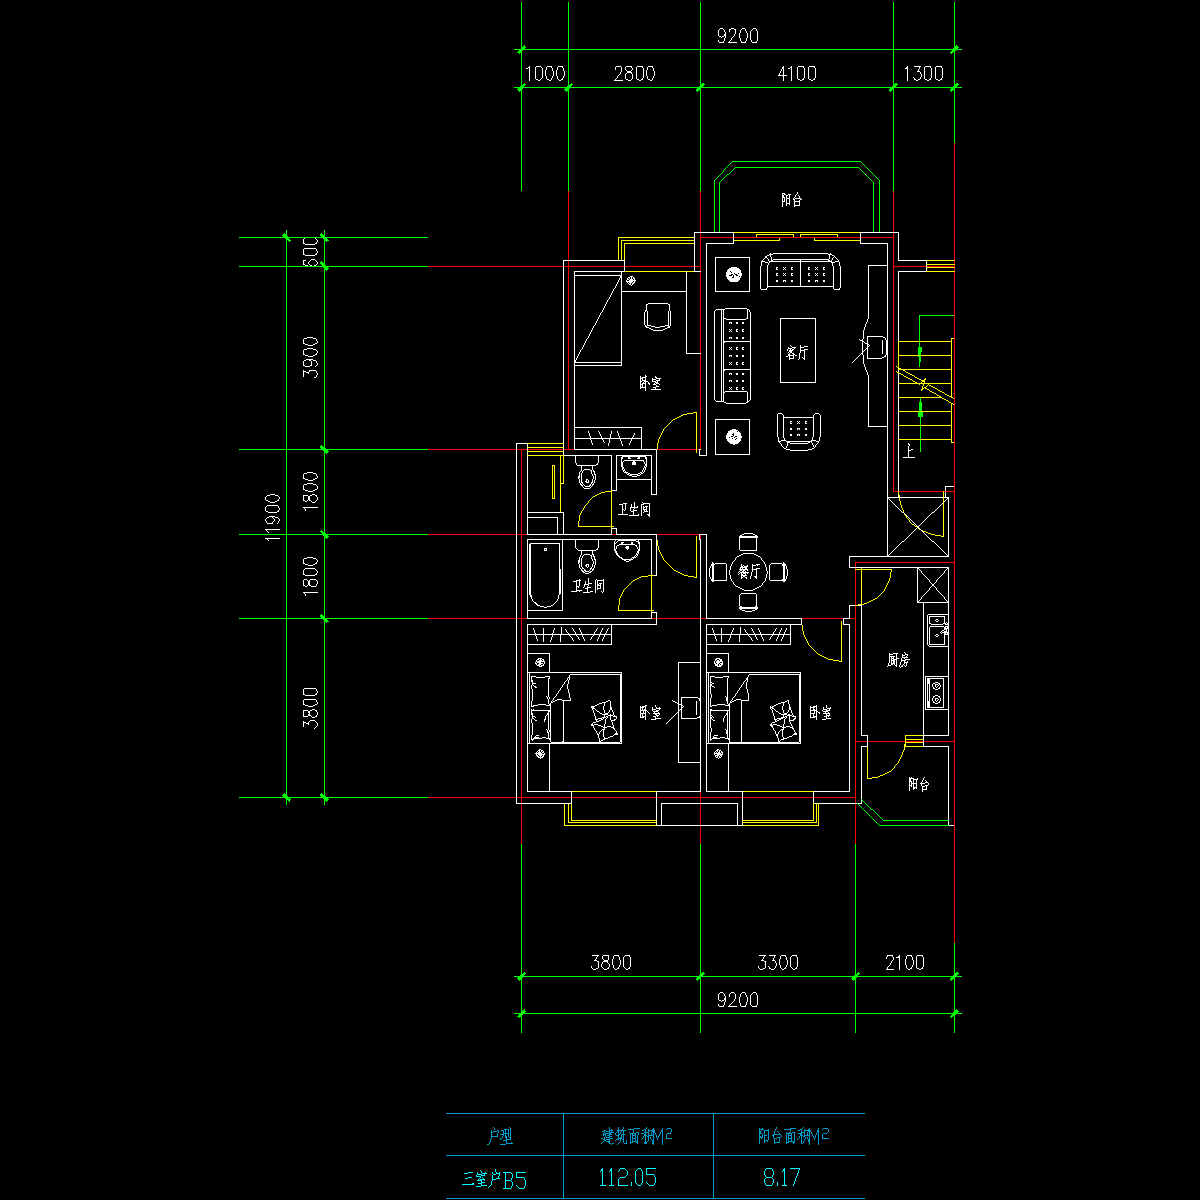 板式高层三室一厅单户户型CAD图纸(112)